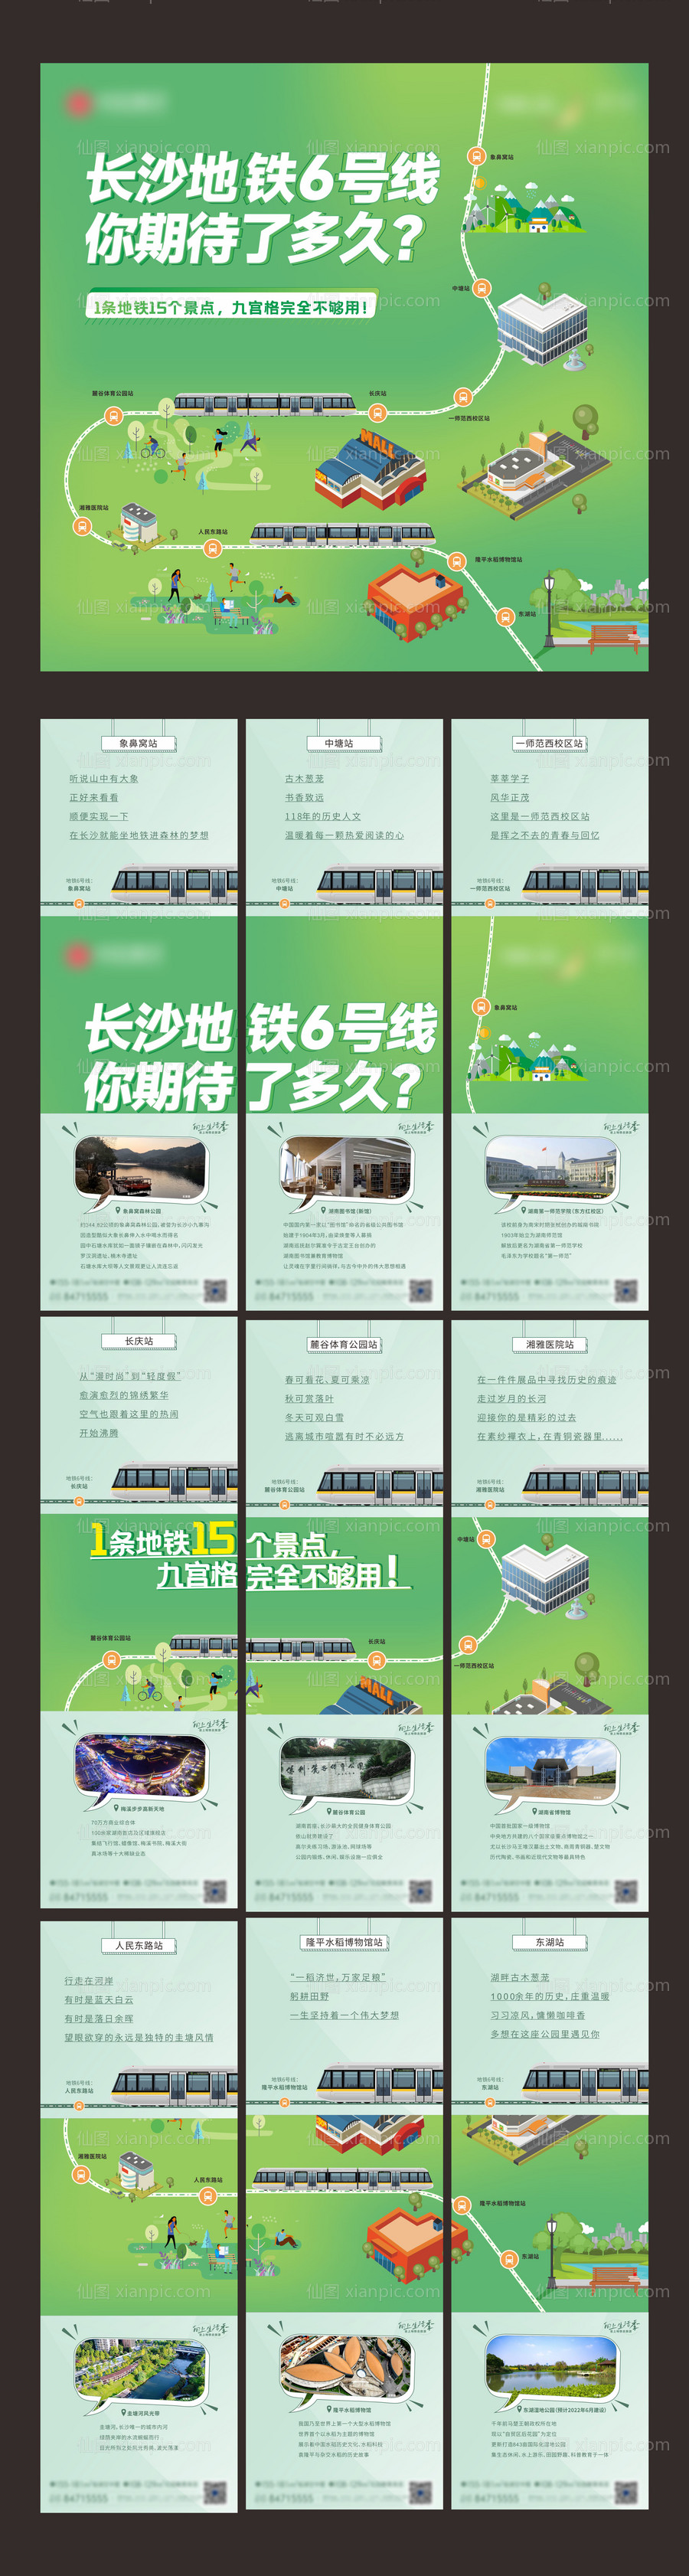 素材乐-卡通示意地铁旅游景点九宫格长图海报